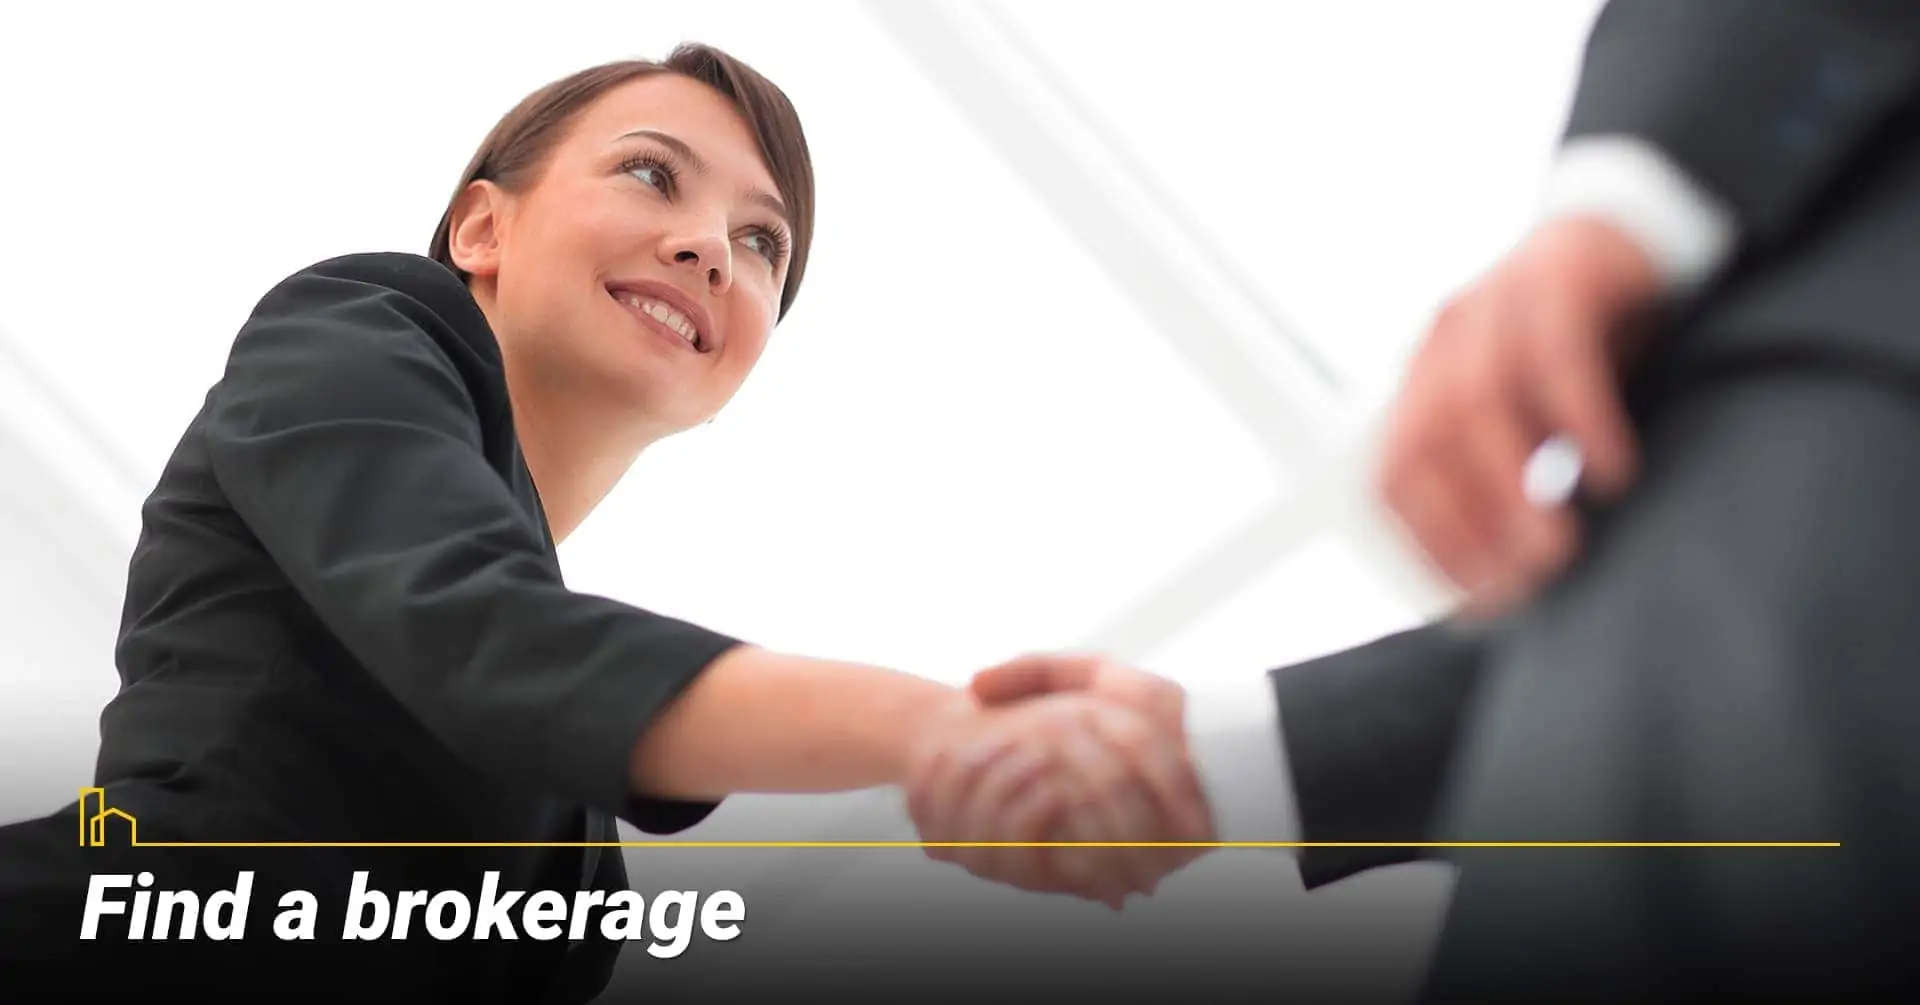 Find a brokerage, work with a broker